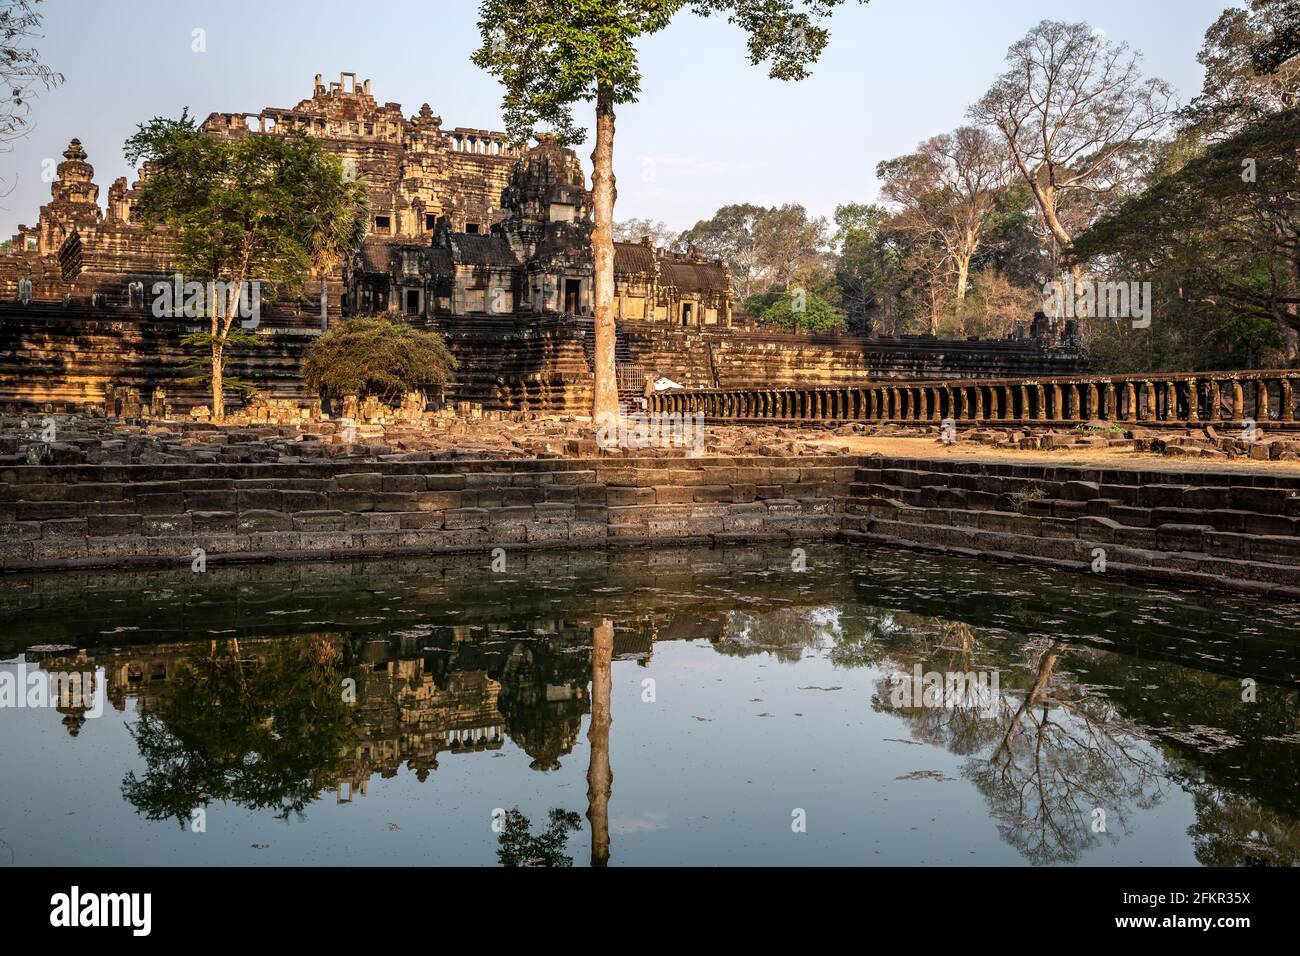 Tempio di Bapuon riflesso sullo stagno, Angkor Thom, Angkor Parco Archeologico, Siem Reap, Cambogia Foto Stock